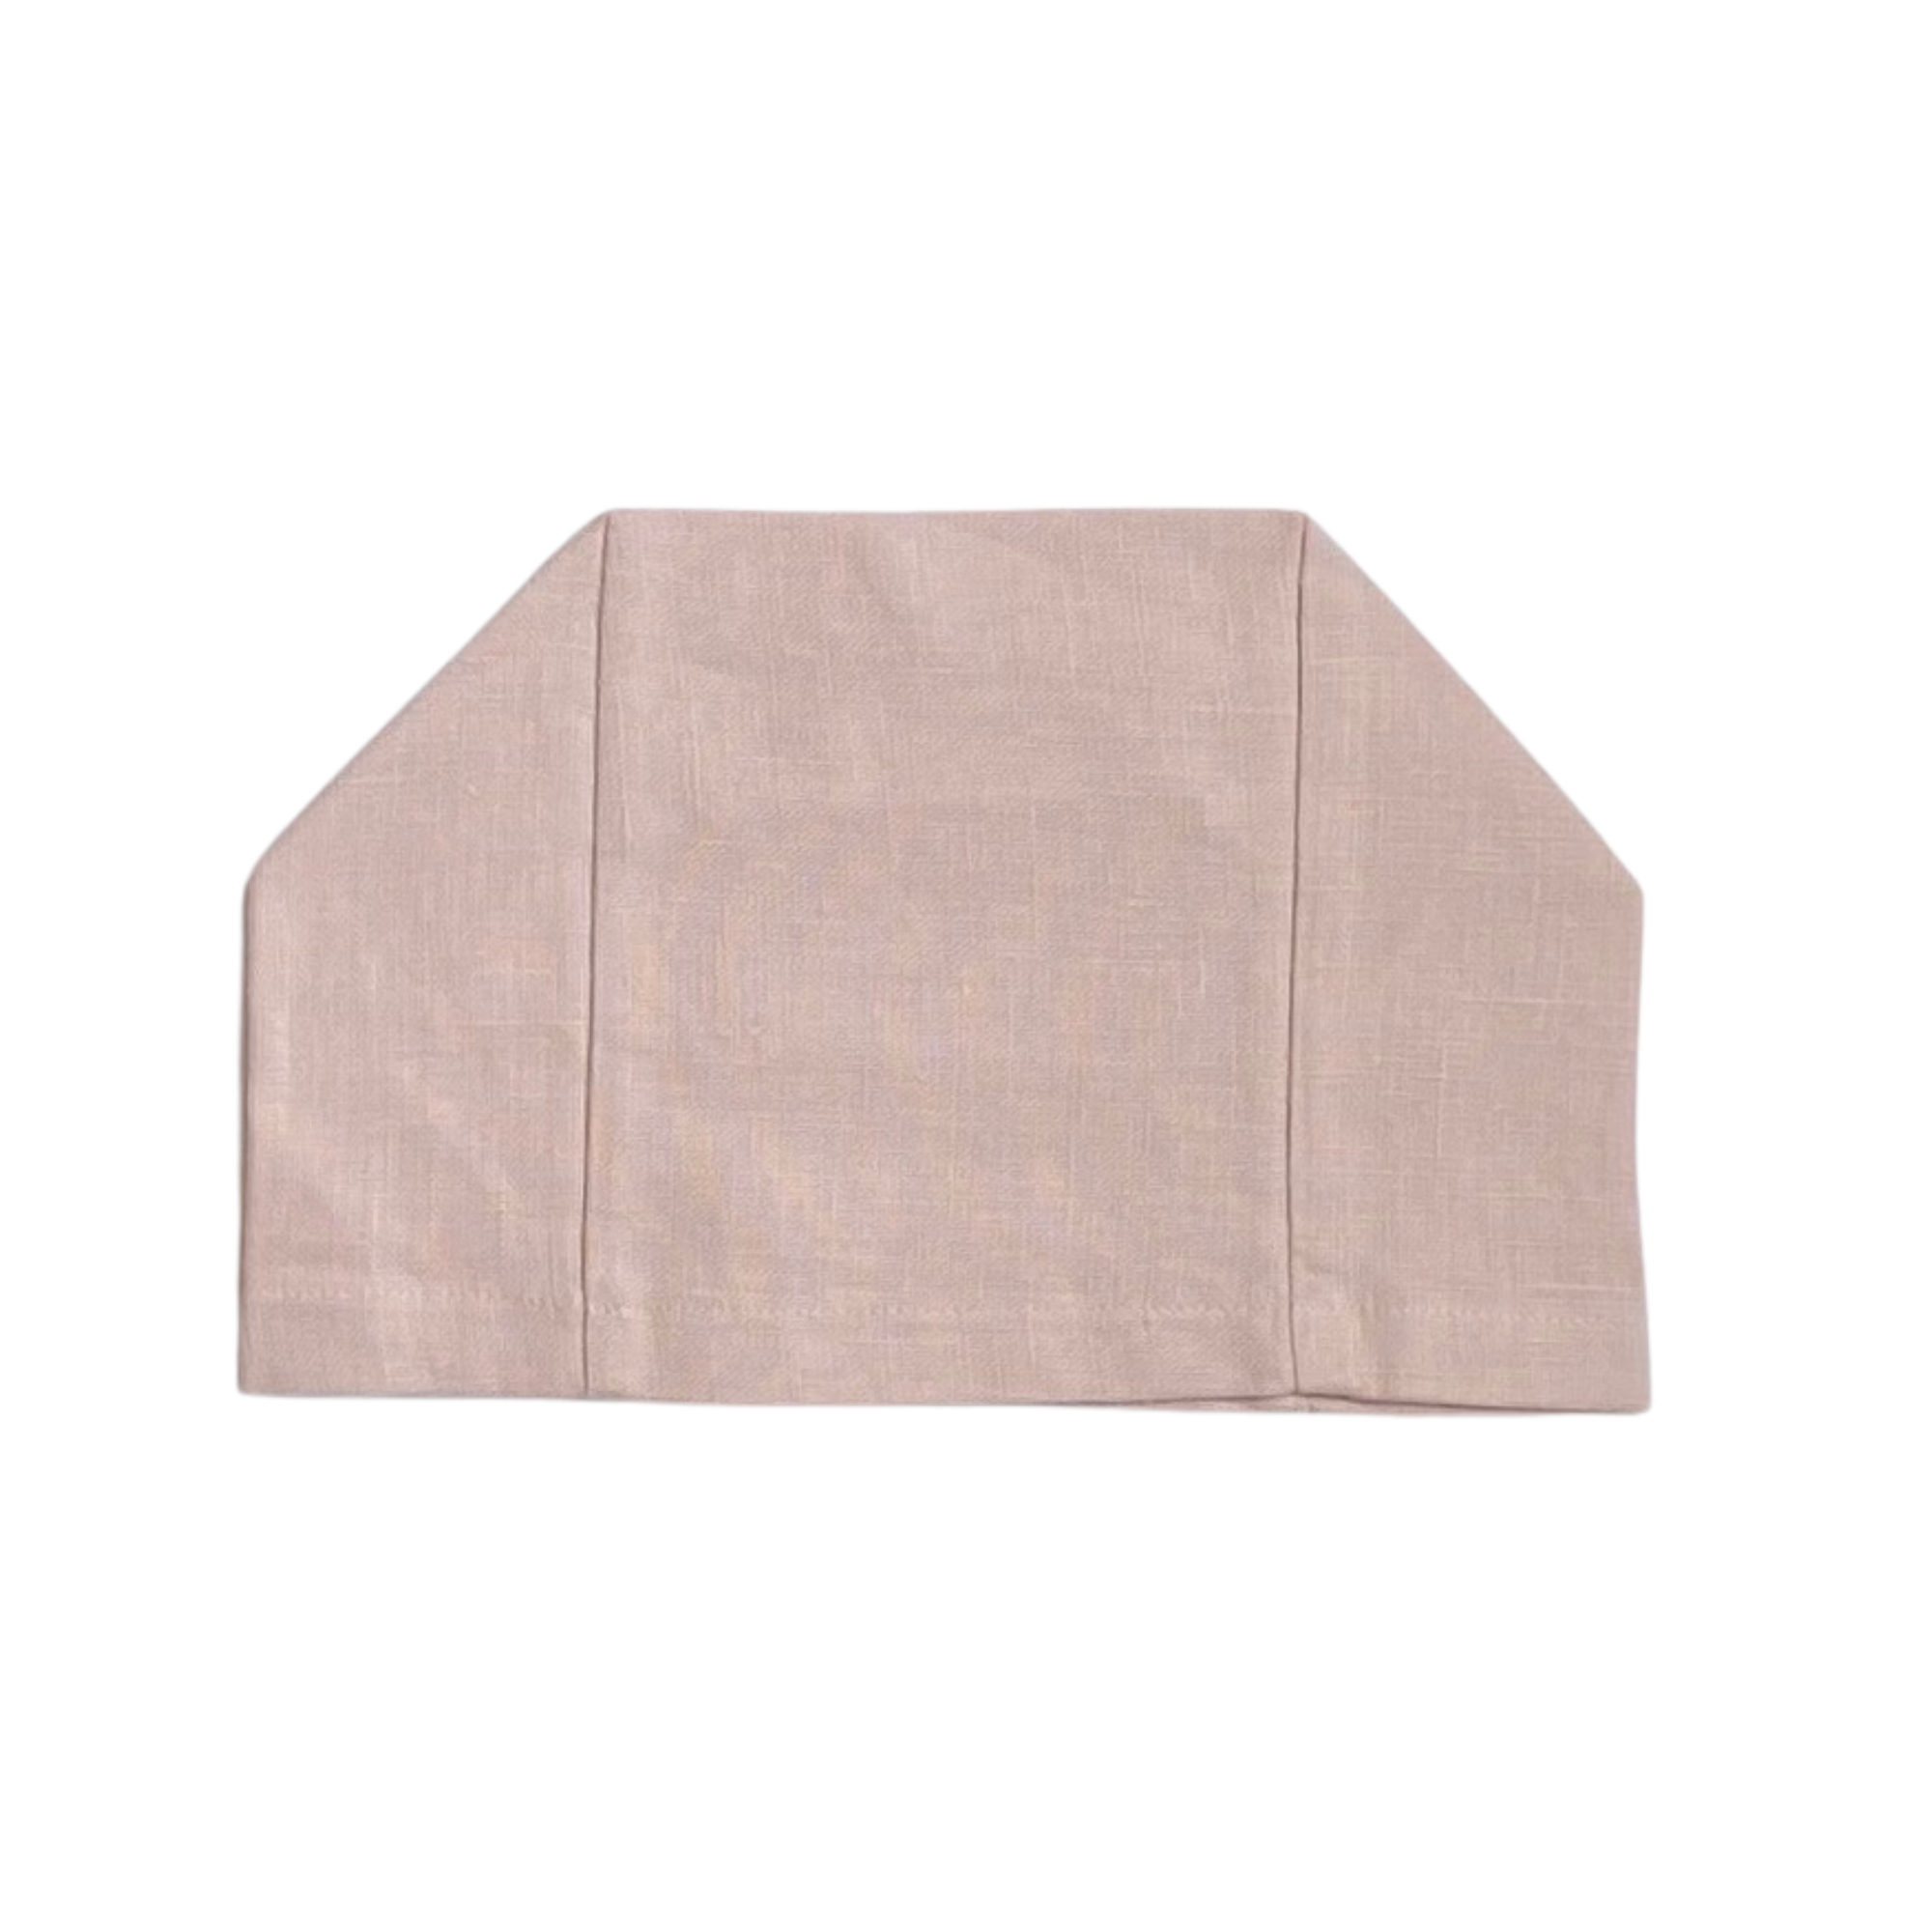 Light Petal Pink 100% European linen tissue box cover